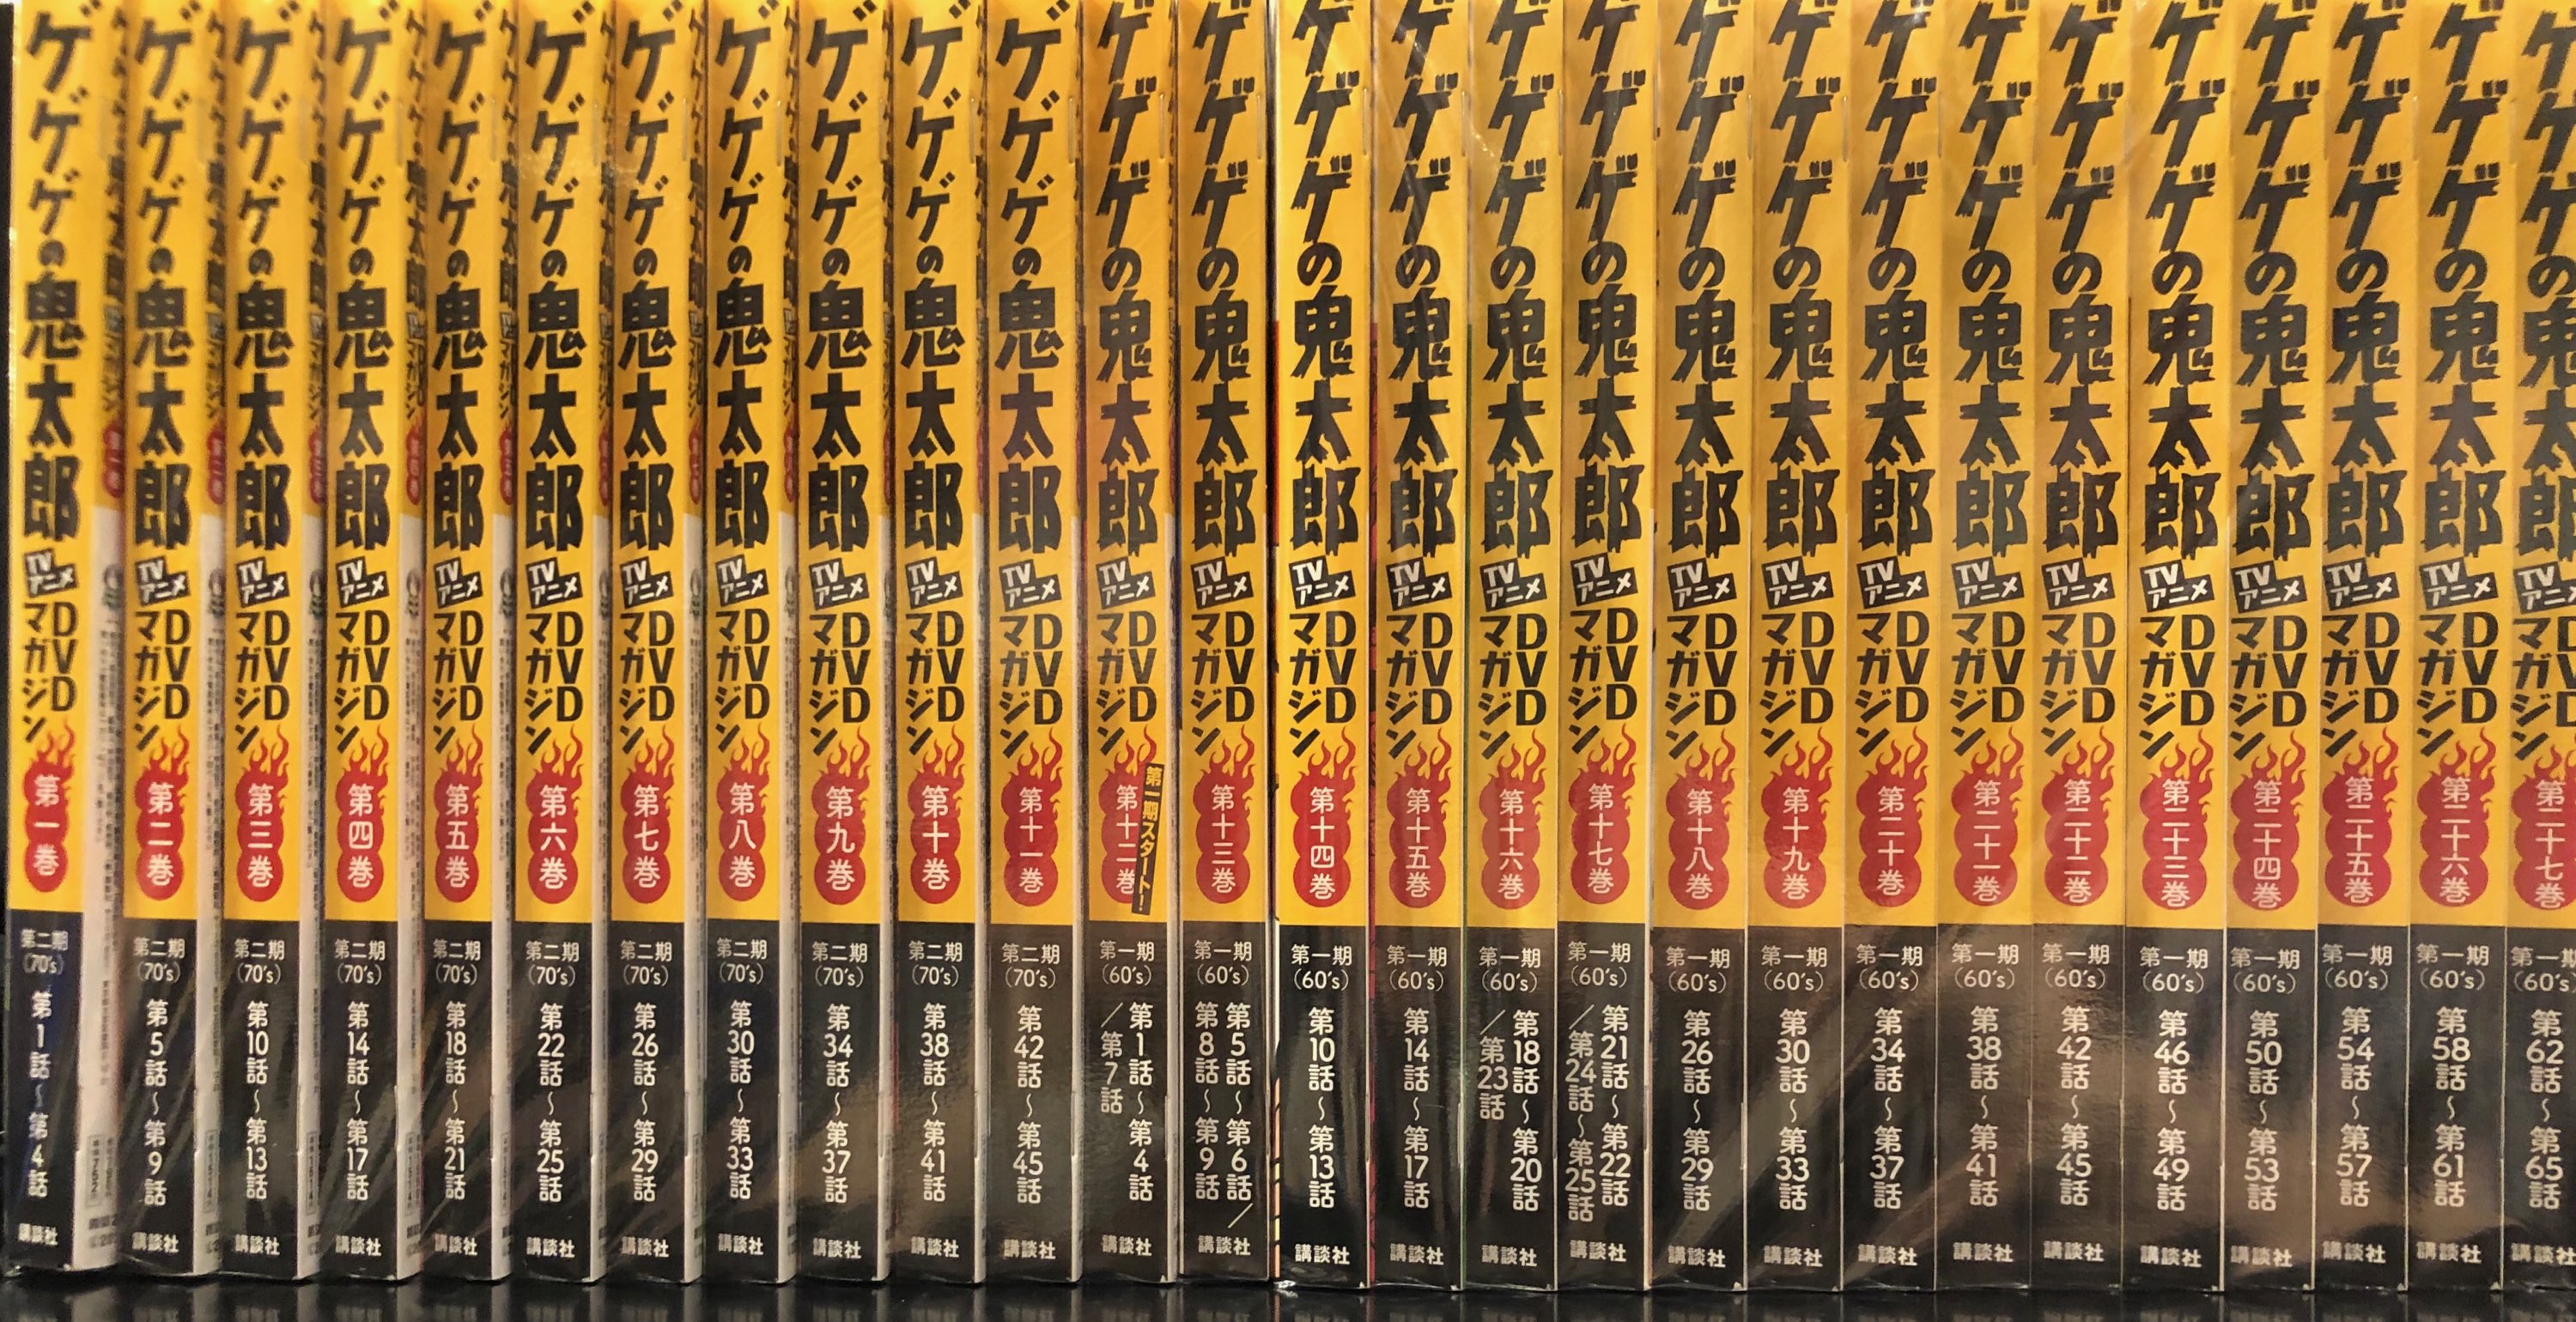 ゲゲゲの鬼太郎 TVアニメ DVDマガジン 全27巻 - DVD